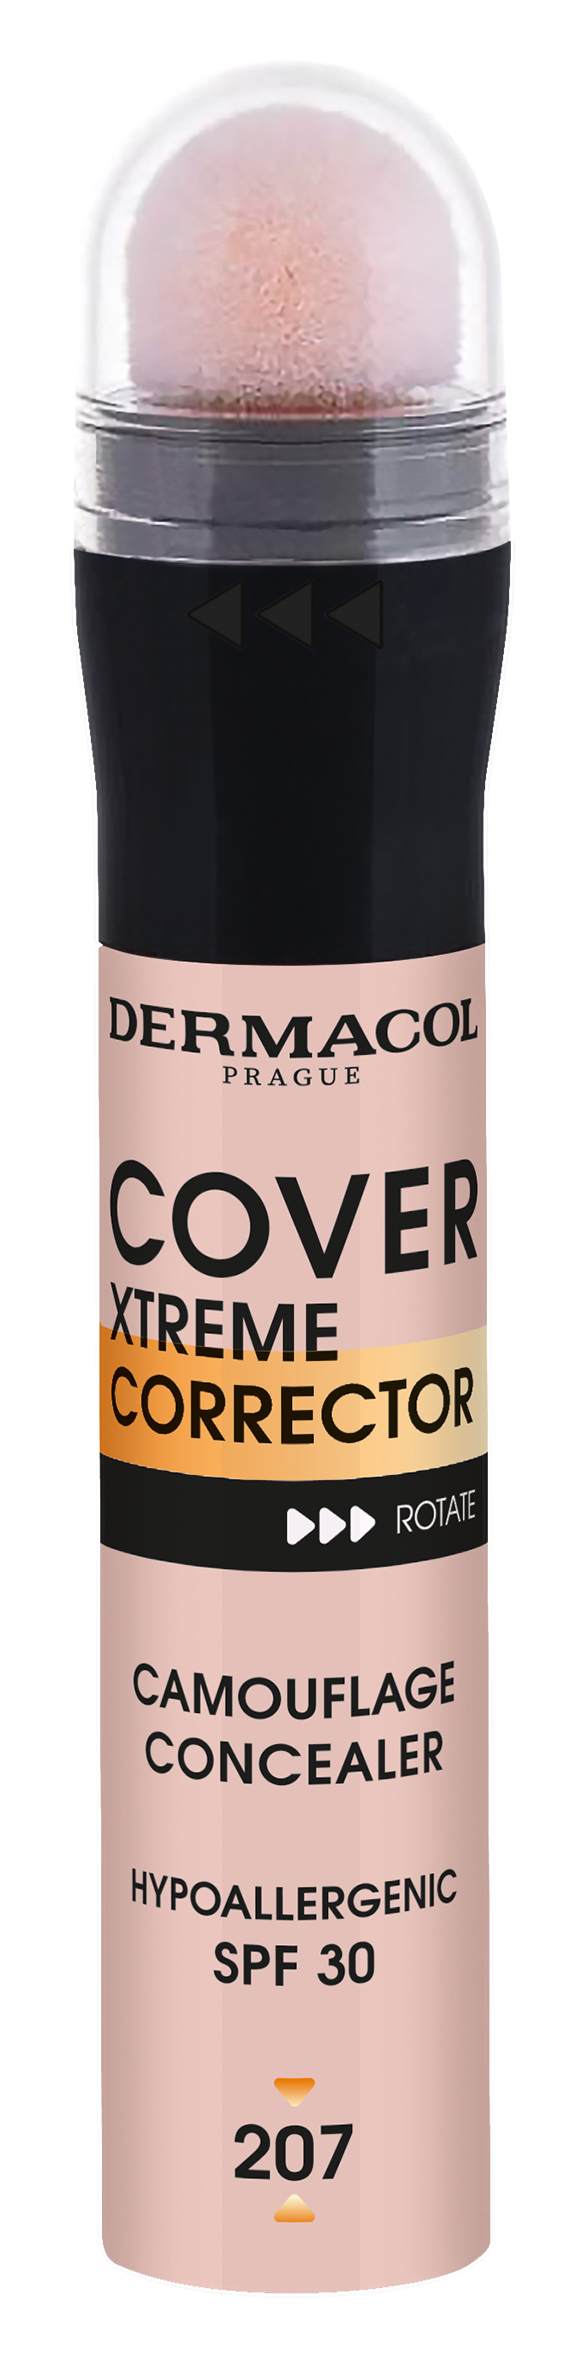 Dermacol Vysoce krycí korektor Cover Xtreme SPF 30 (Camouflage Concealer) 8 g 221